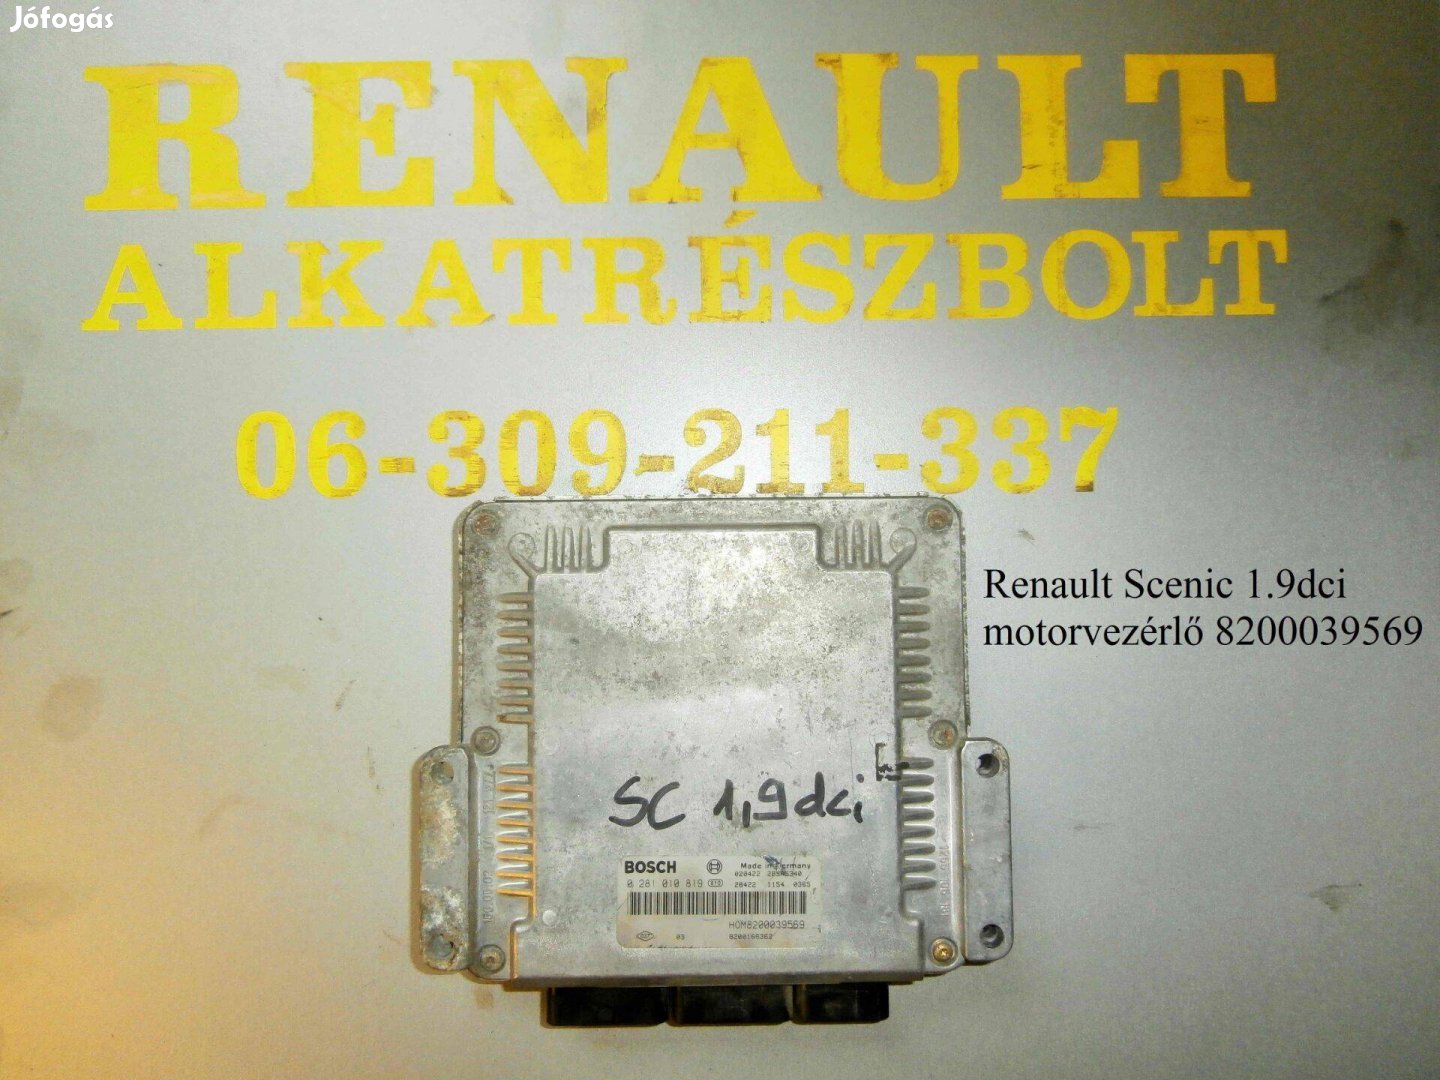 Renault Scenic 1.9dci motorvezérlő 8200039569